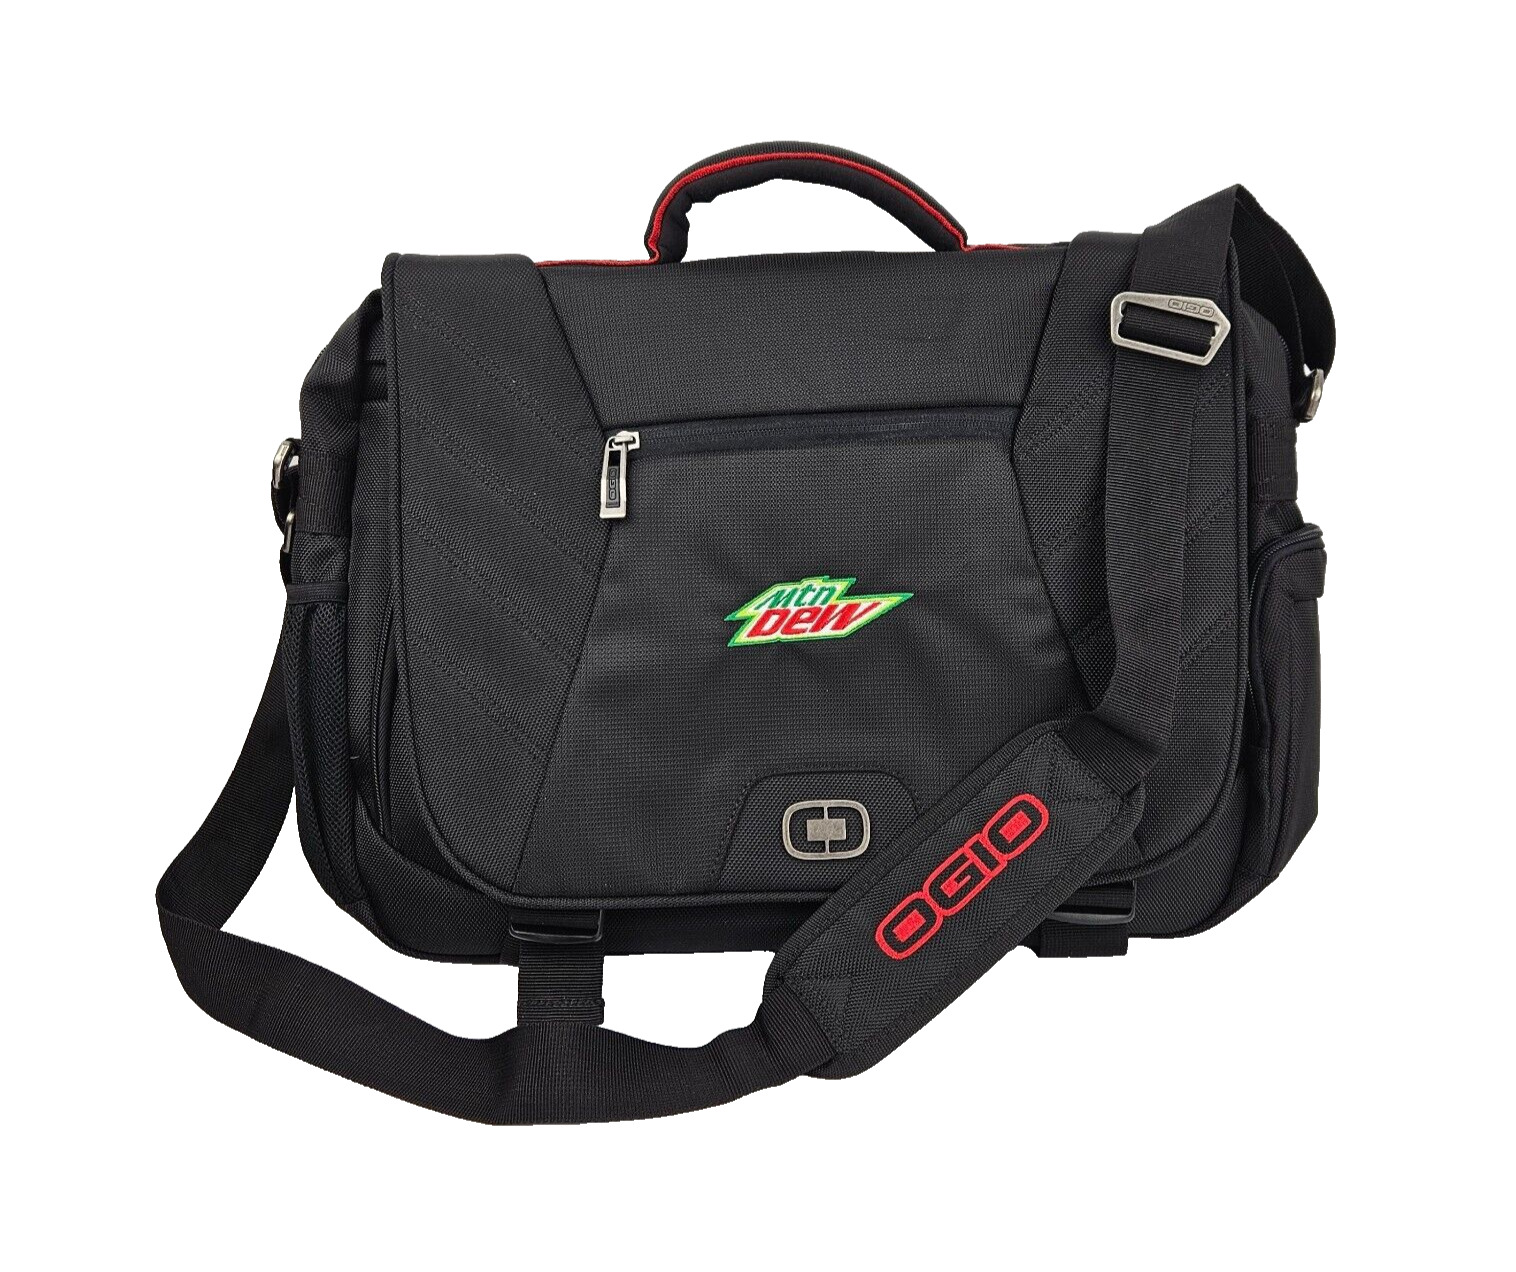 Ogio #417016  Mtn Dew Embroidered Laptop  Bag With Shoulder Strap Promo?